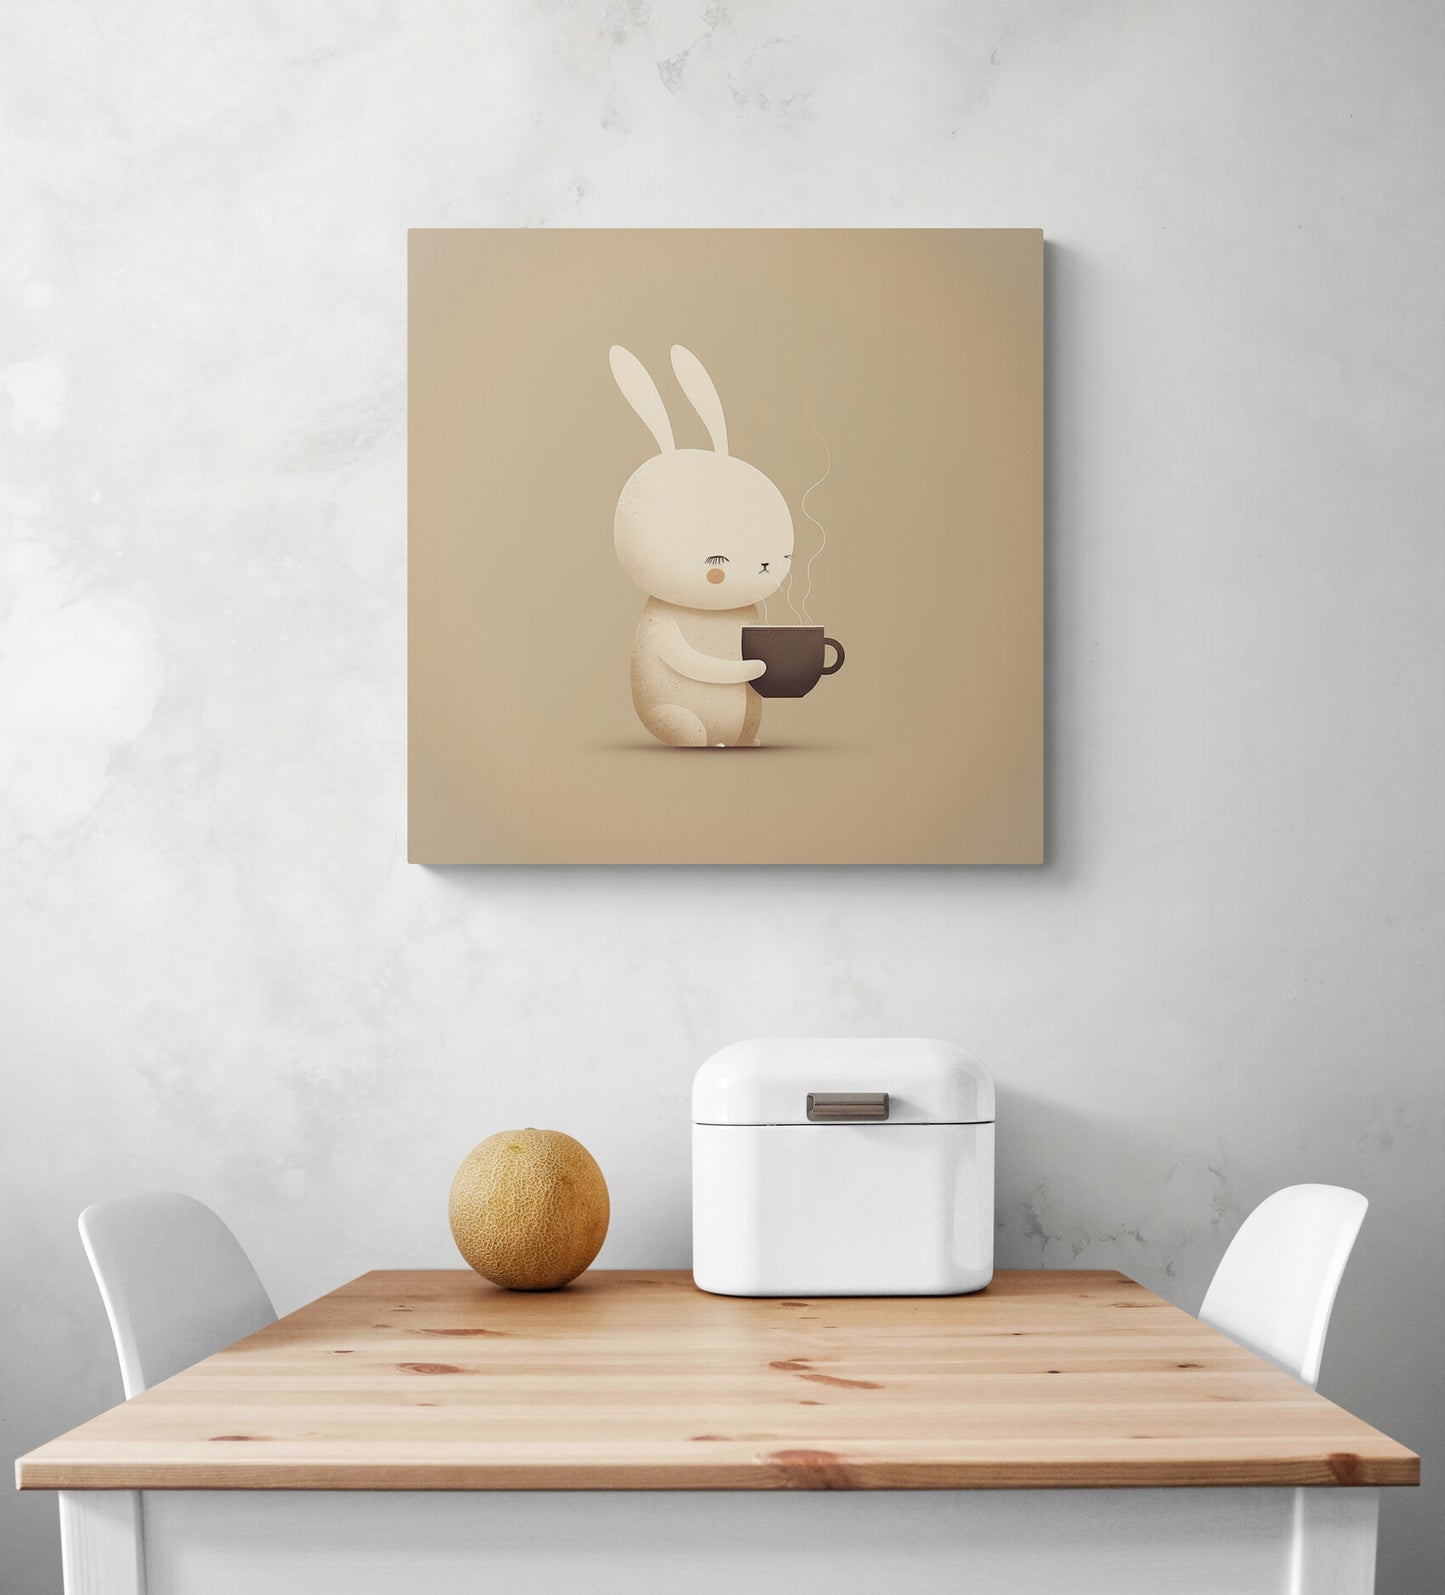 Déco murale dans une cuisine d'un tableau de taille moyenne d'un mignon lapin qui apprécie l'odeur du chocolat chaud émanant de sa tasse pouvant rappeler une chambre bébé. Le marron vient rappeler le chocolat, son goût et sa chaleur par la même occasion.